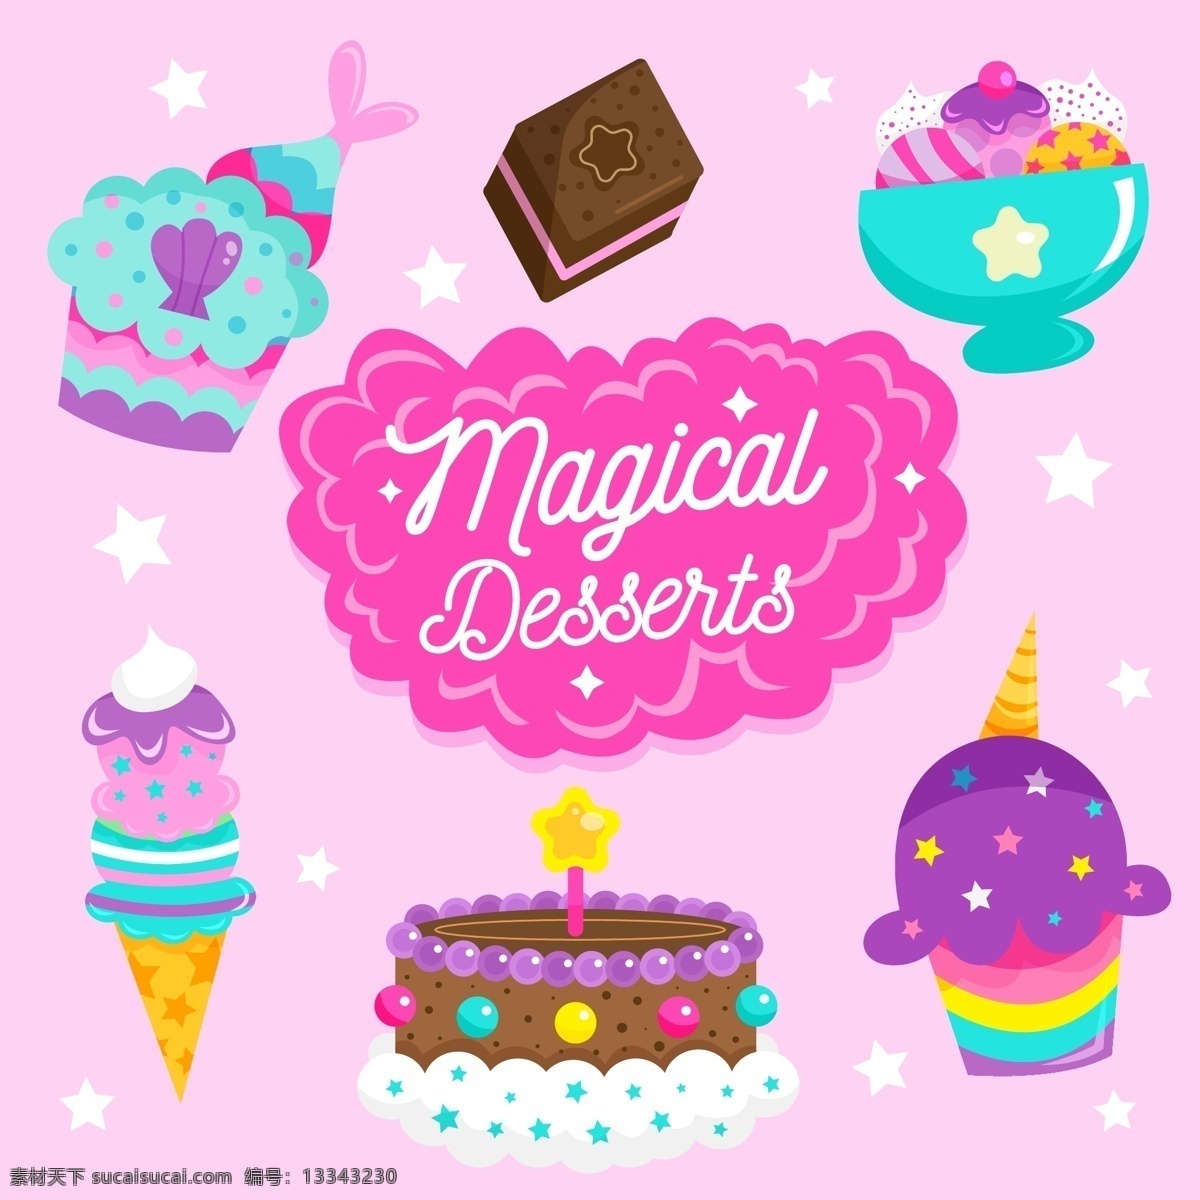 多款生日素材 多款蛋糕 生日素材 彩色卡通蛋糕 卡通蛋糕 蛋糕 蜡烛 设计素材 生活百科 餐饮美食